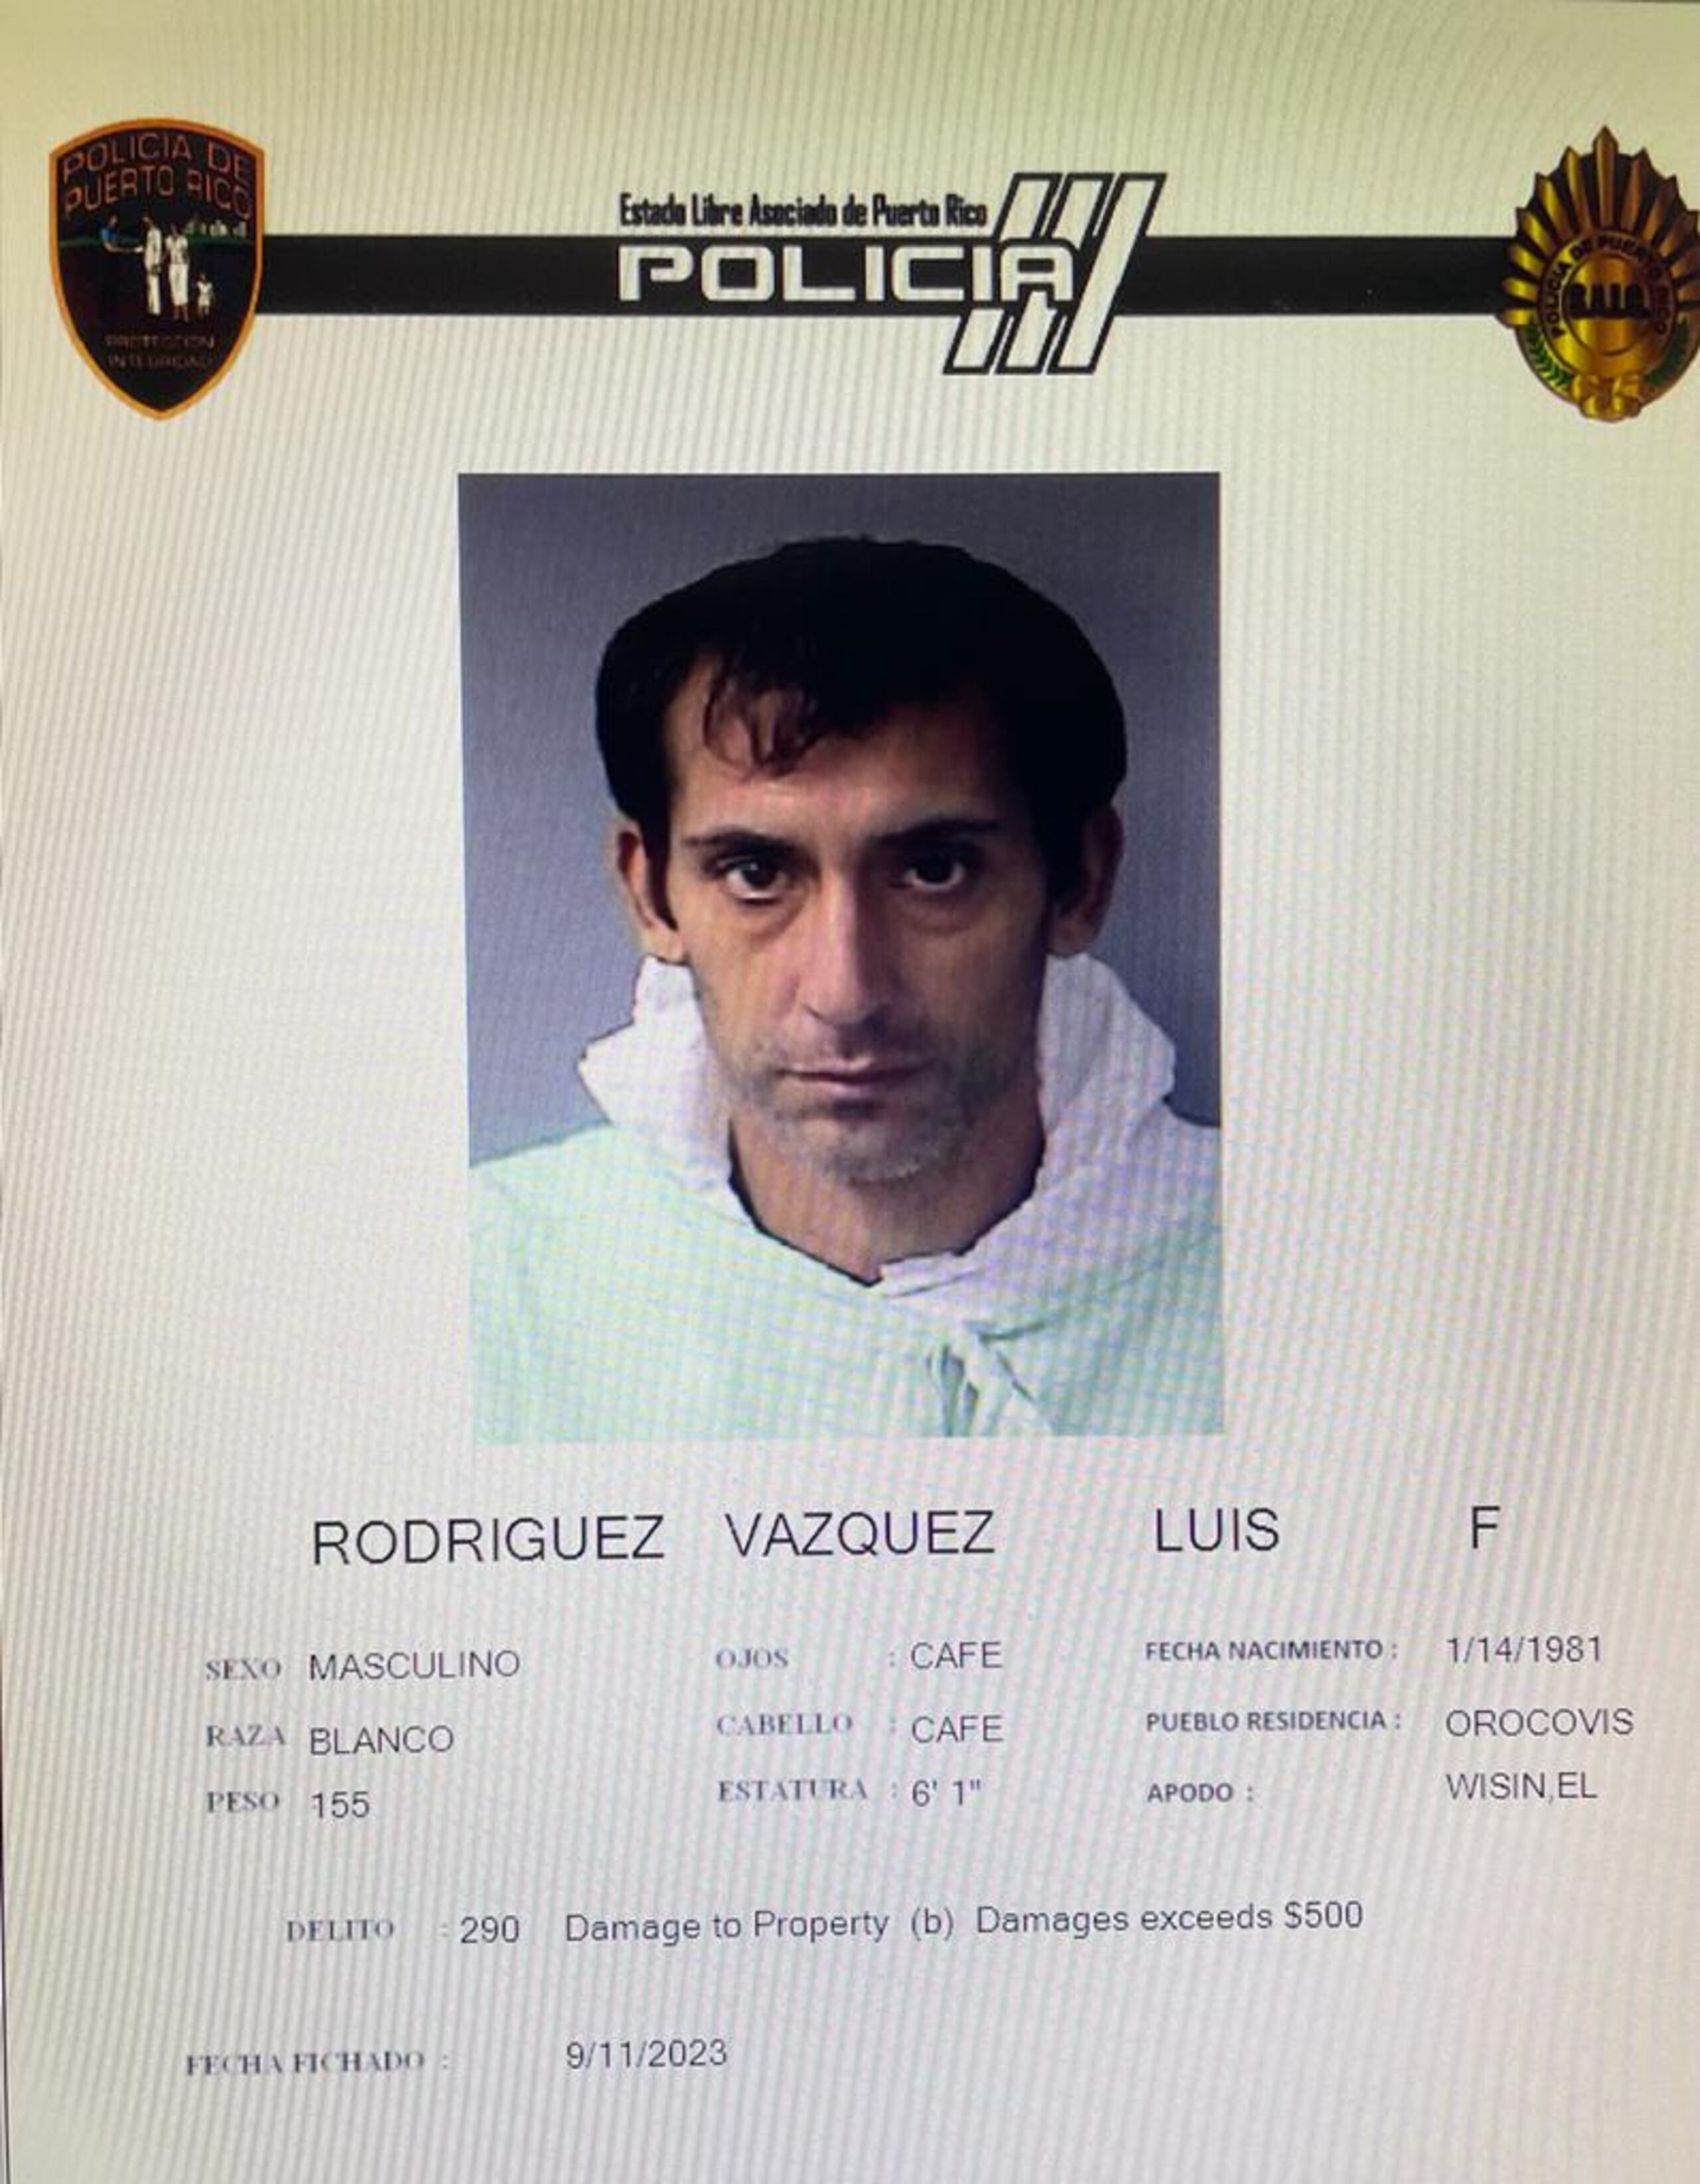 Luis F. Rodríguez Vázquez alias Wisin, fue encarcelado al no prestar una fianza de $40,000.00